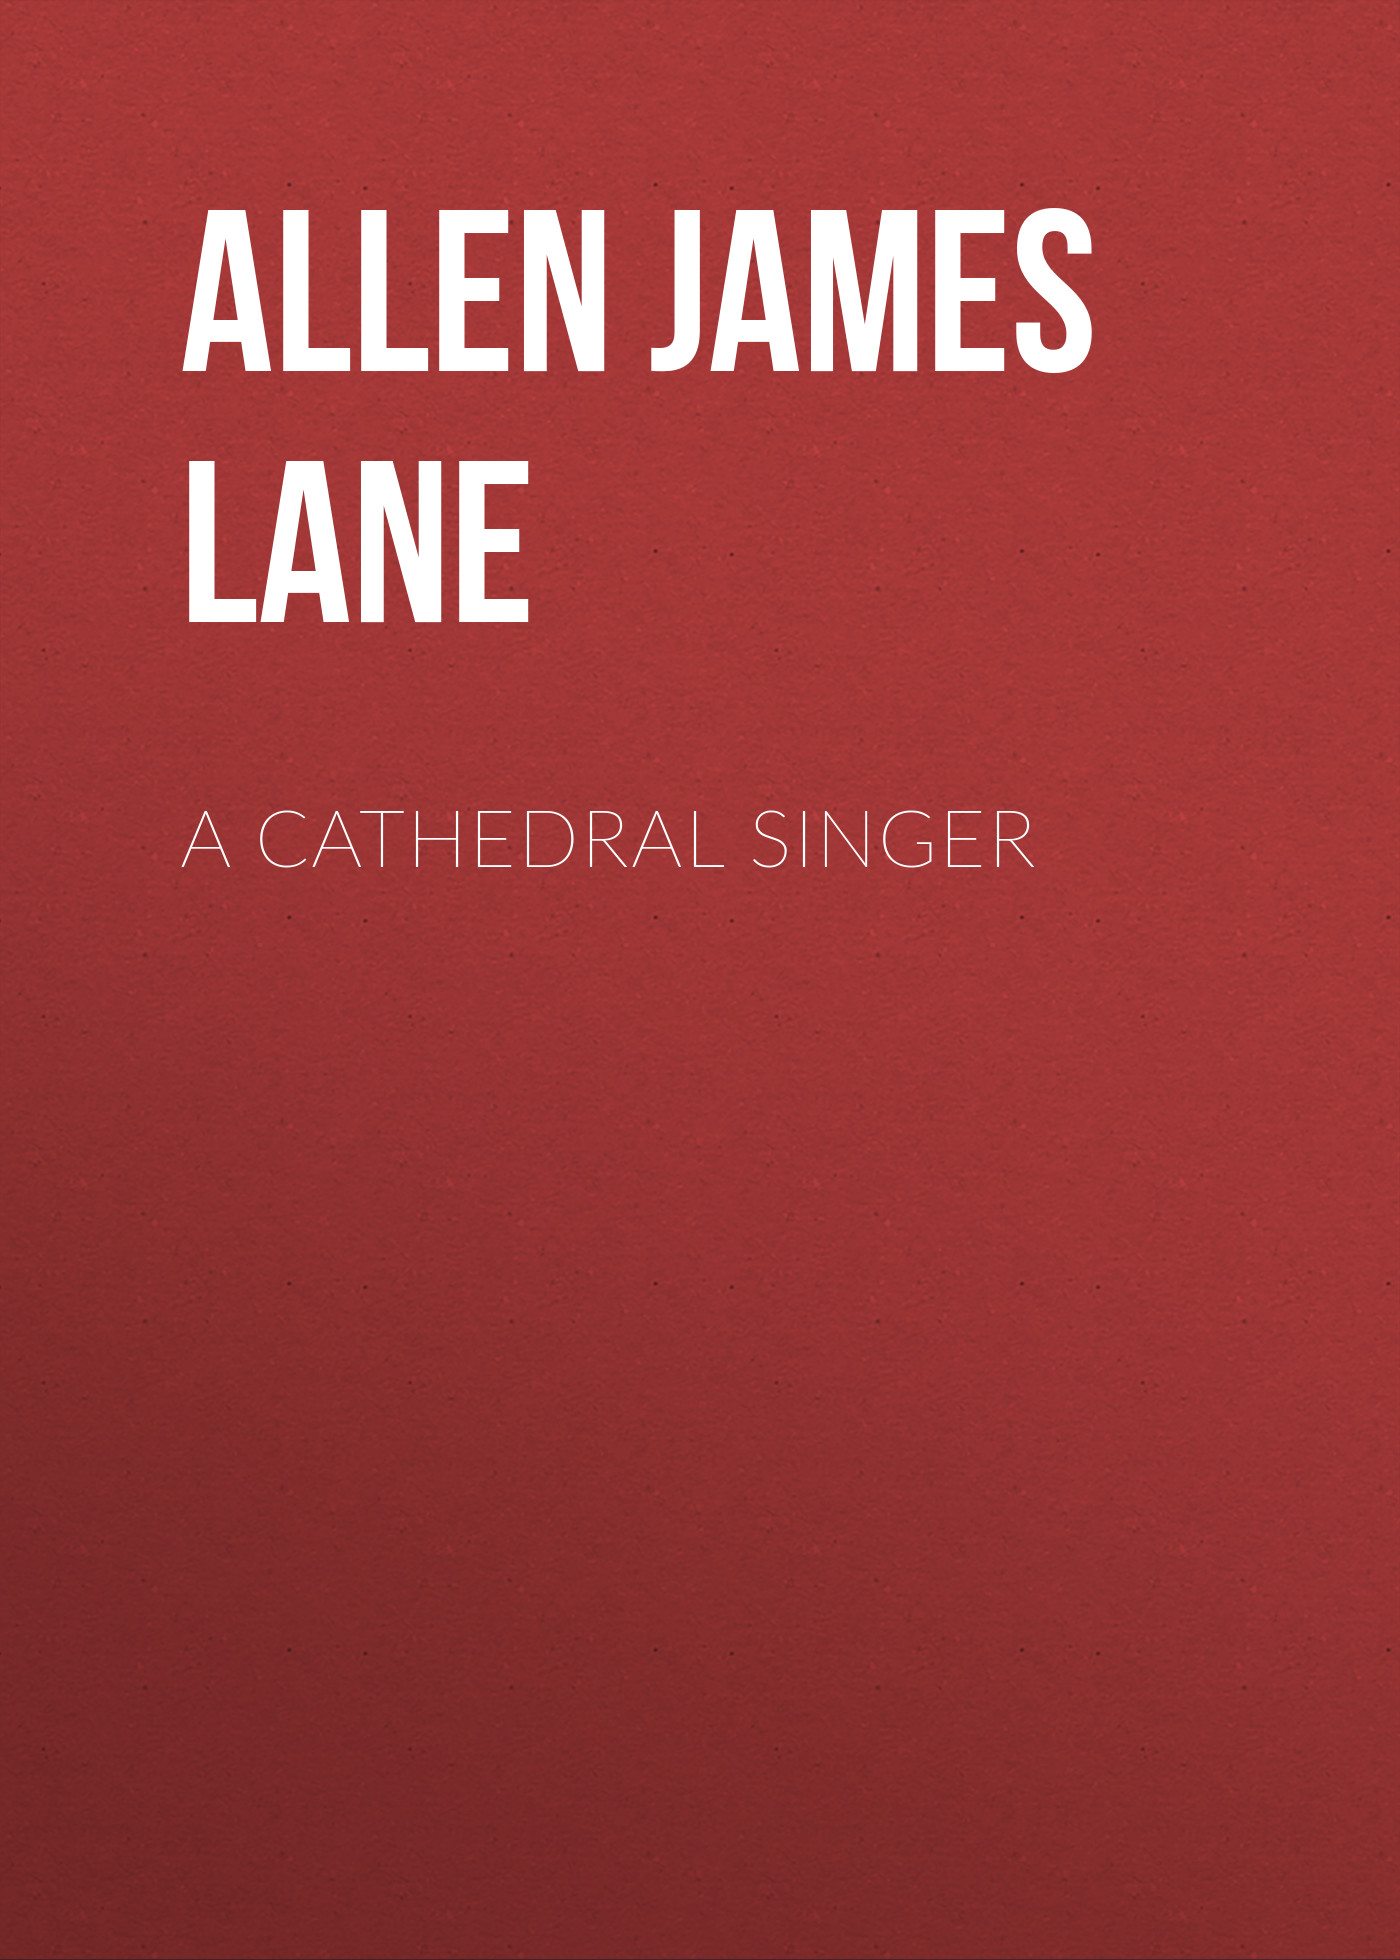 Книга A Cathedral Singer из серии , созданная James Allen, может относится к жанру Зарубежная классика, Зарубежная старинная литература. Стоимость электронной книги A Cathedral Singer с идентификатором 36365022 составляет 0 руб.